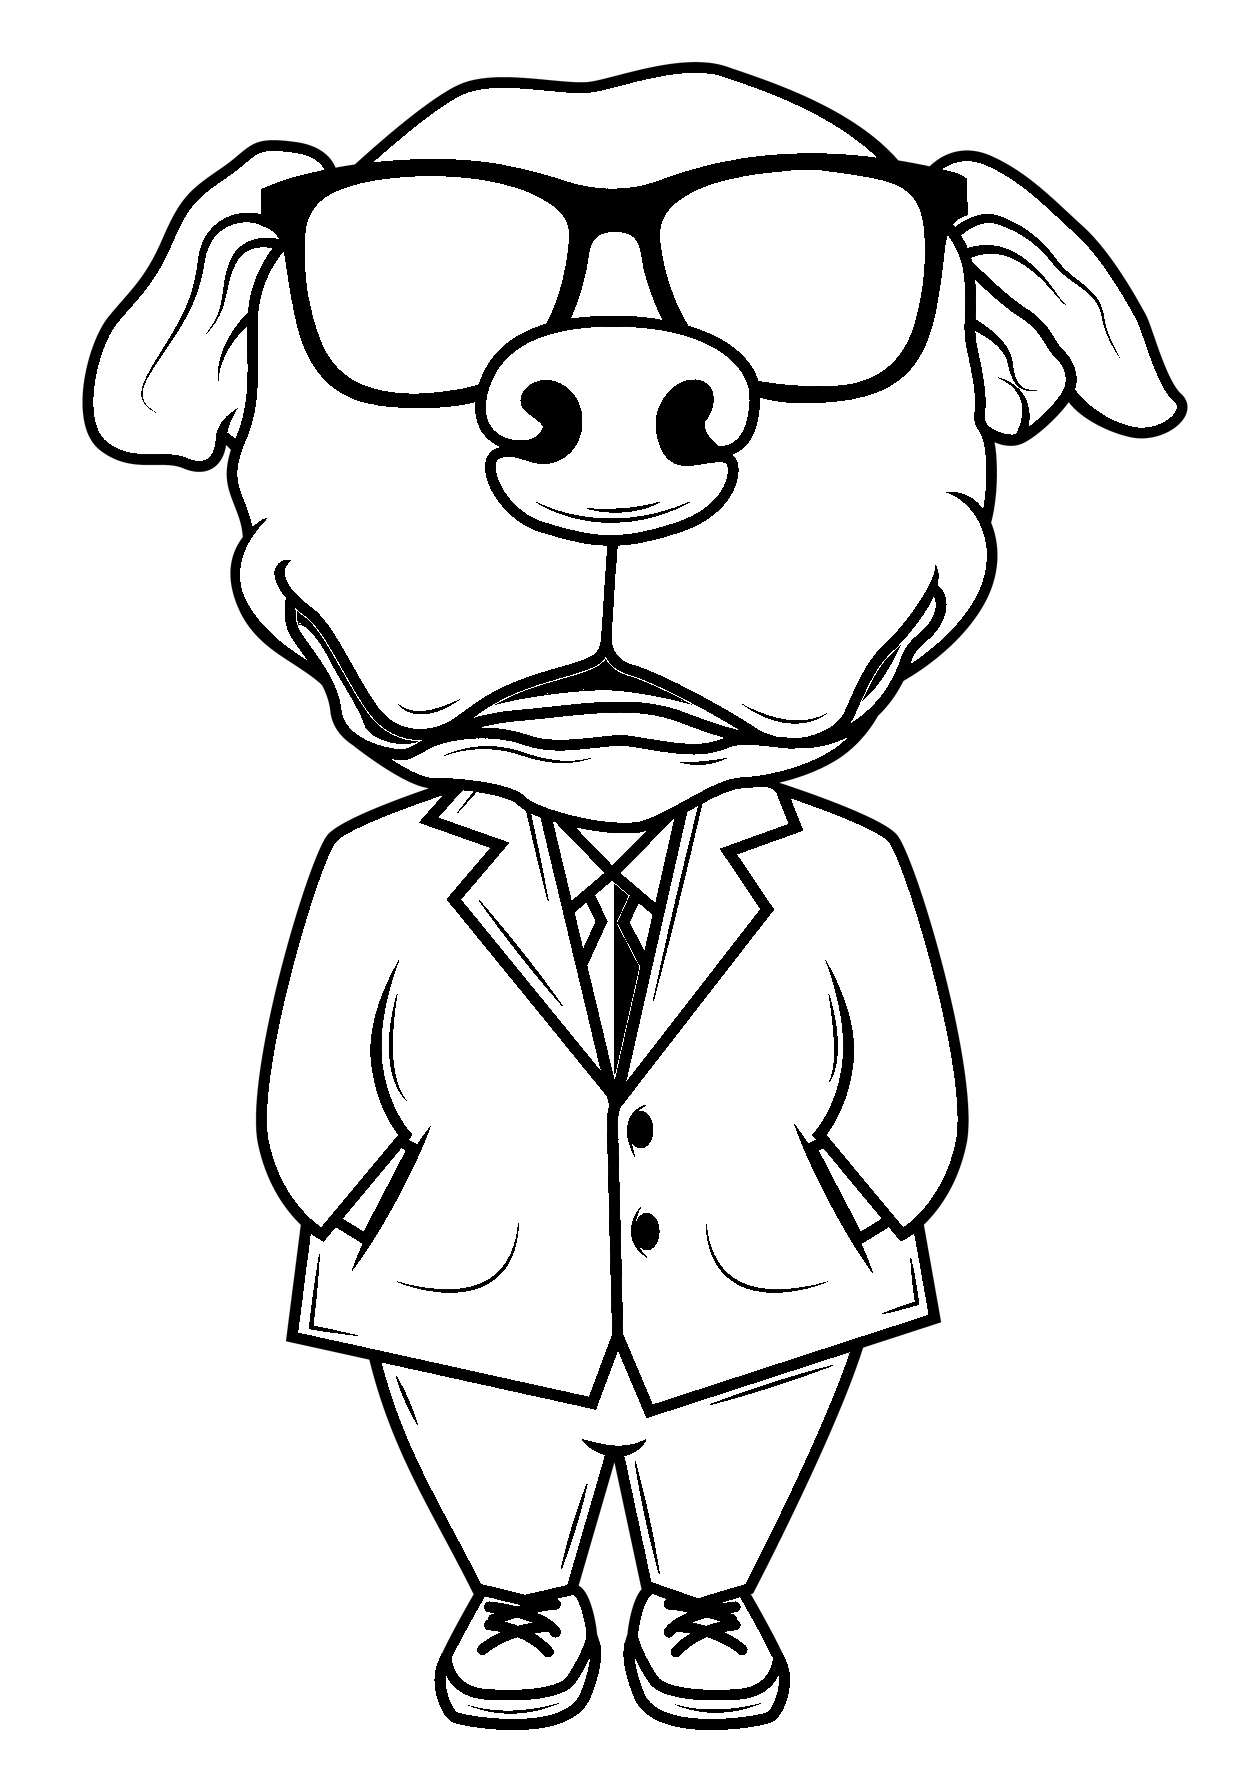 Disegno da colorare di cane umoristico in giacca, cravatta e occhiali scuri